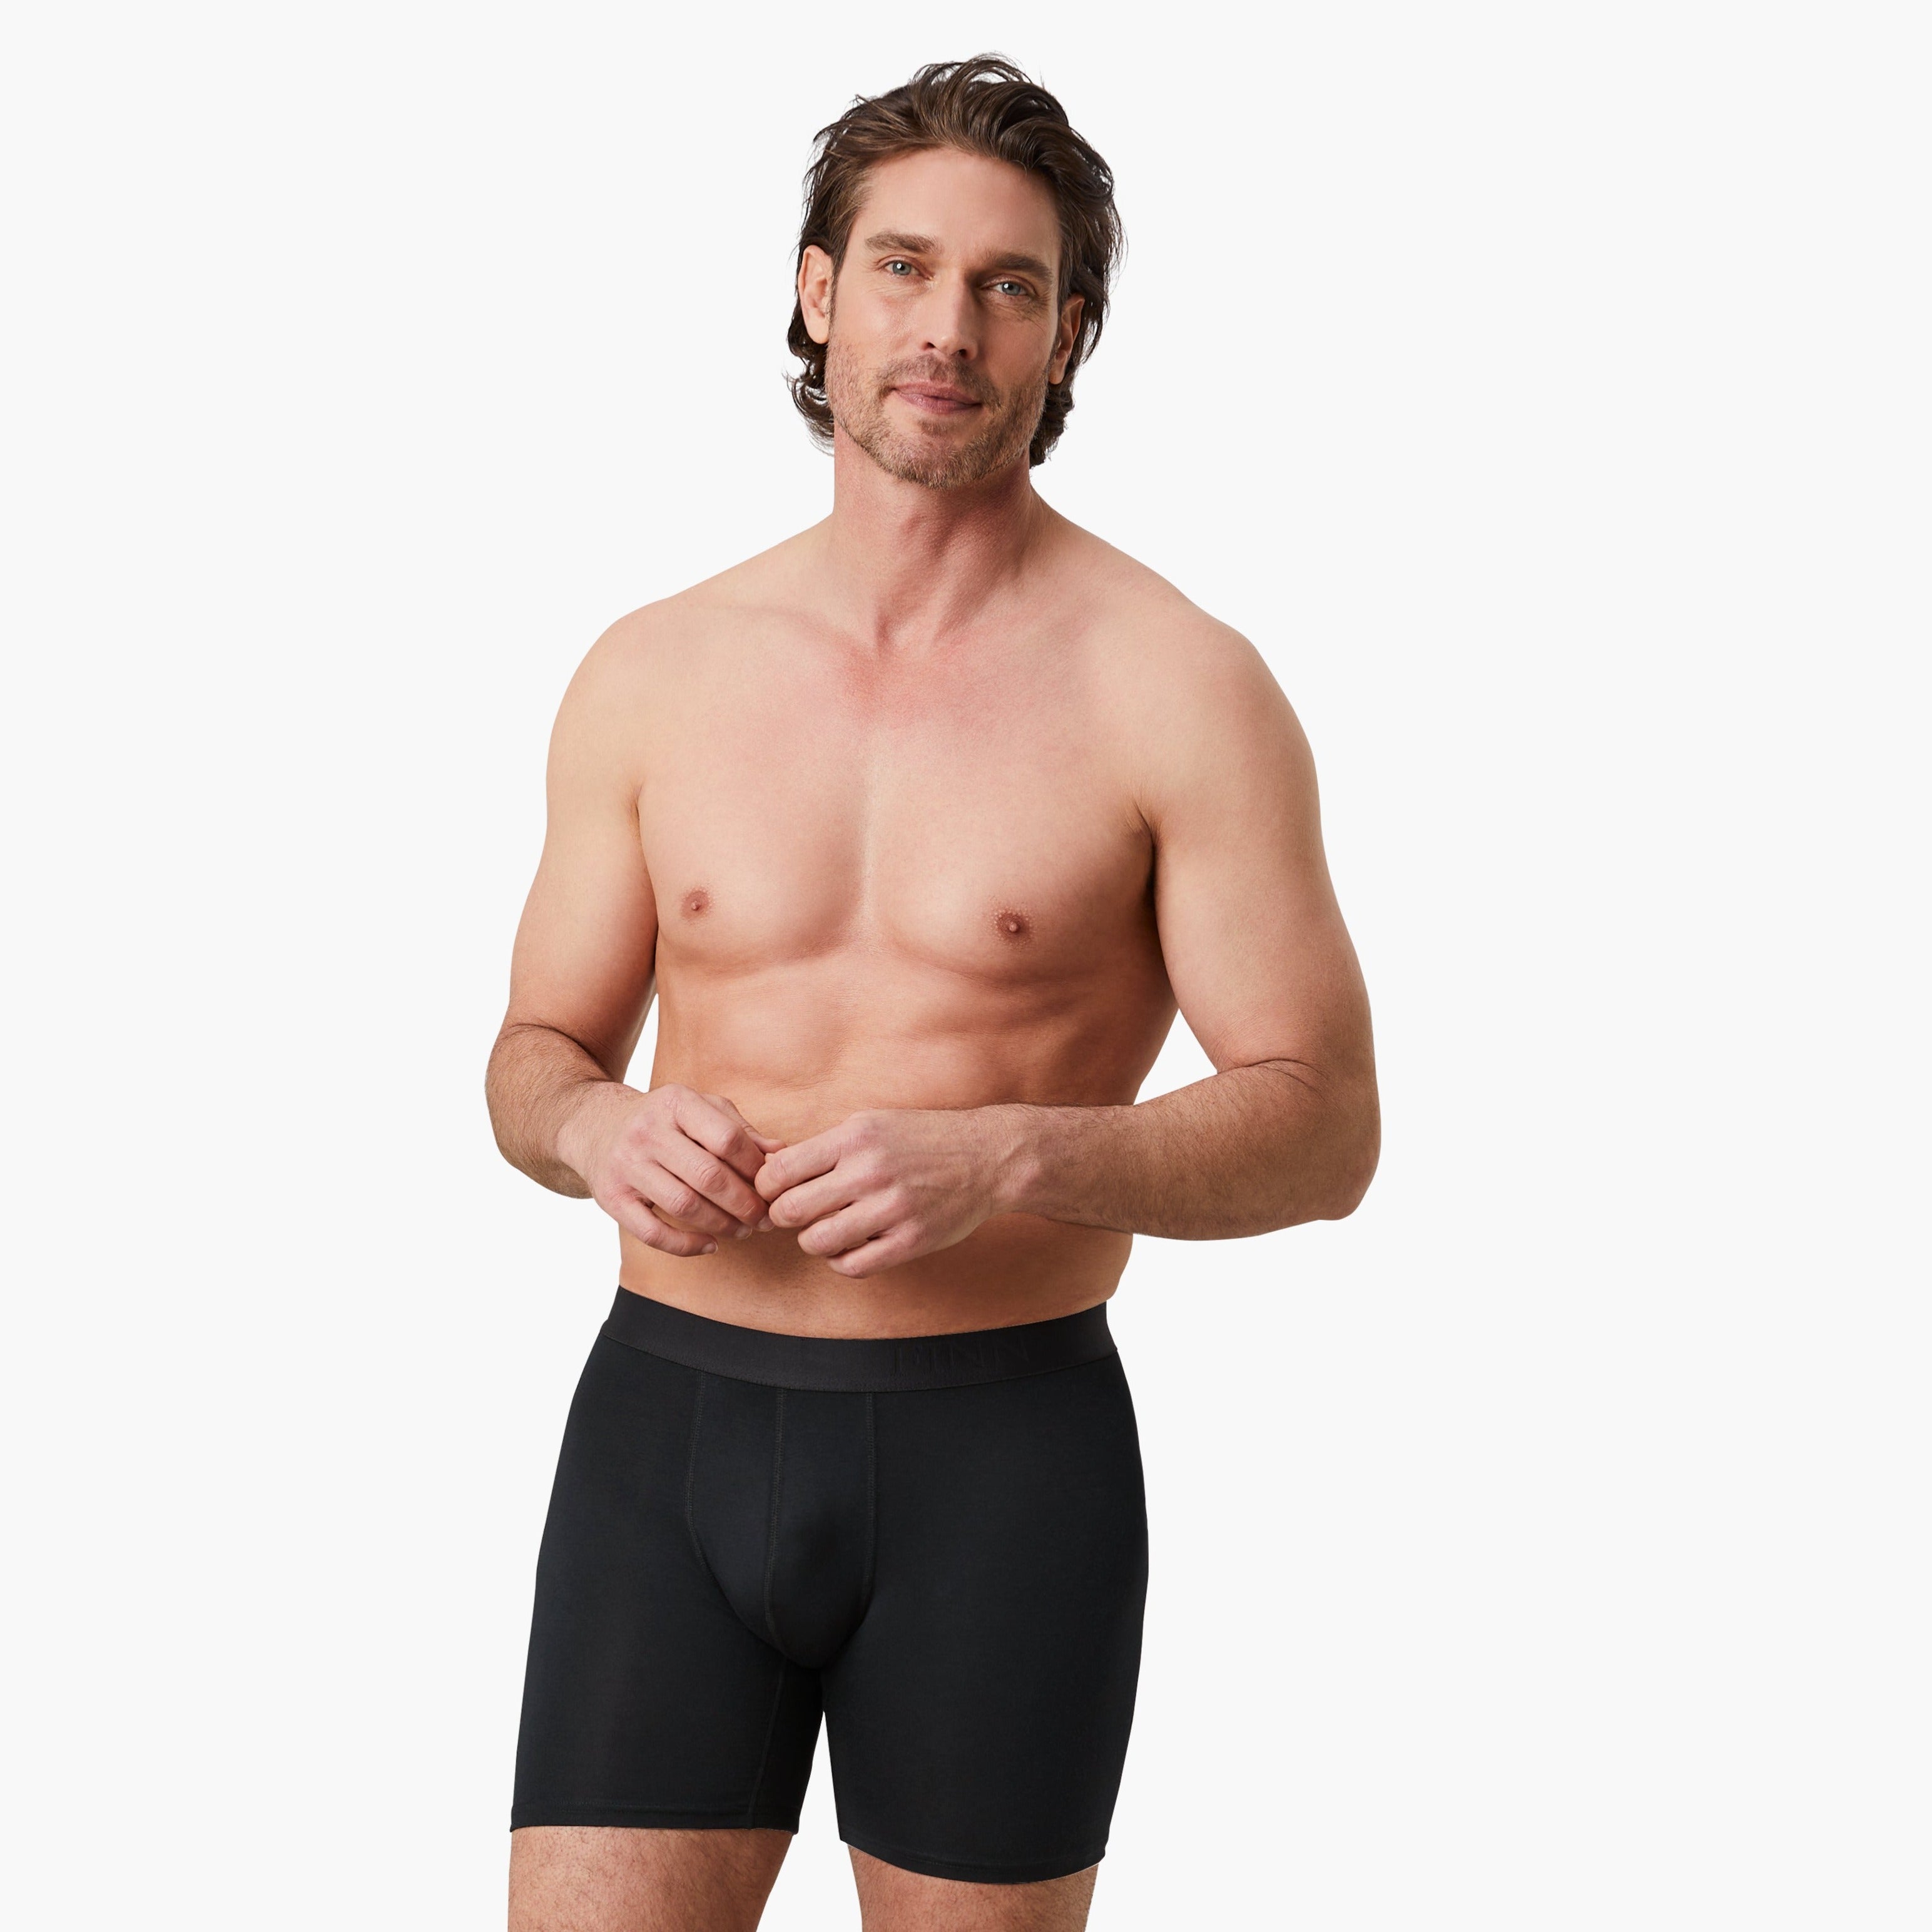 Zufriedener Mann trägt schwarze Anti-Schweiß Boxershorts Herren in Größe M. 100% Schutz vor Schweißflecken dank innovativer 3-Lagen Technologie. Zertifizierter Tragekomfort. #farbe_schwarz